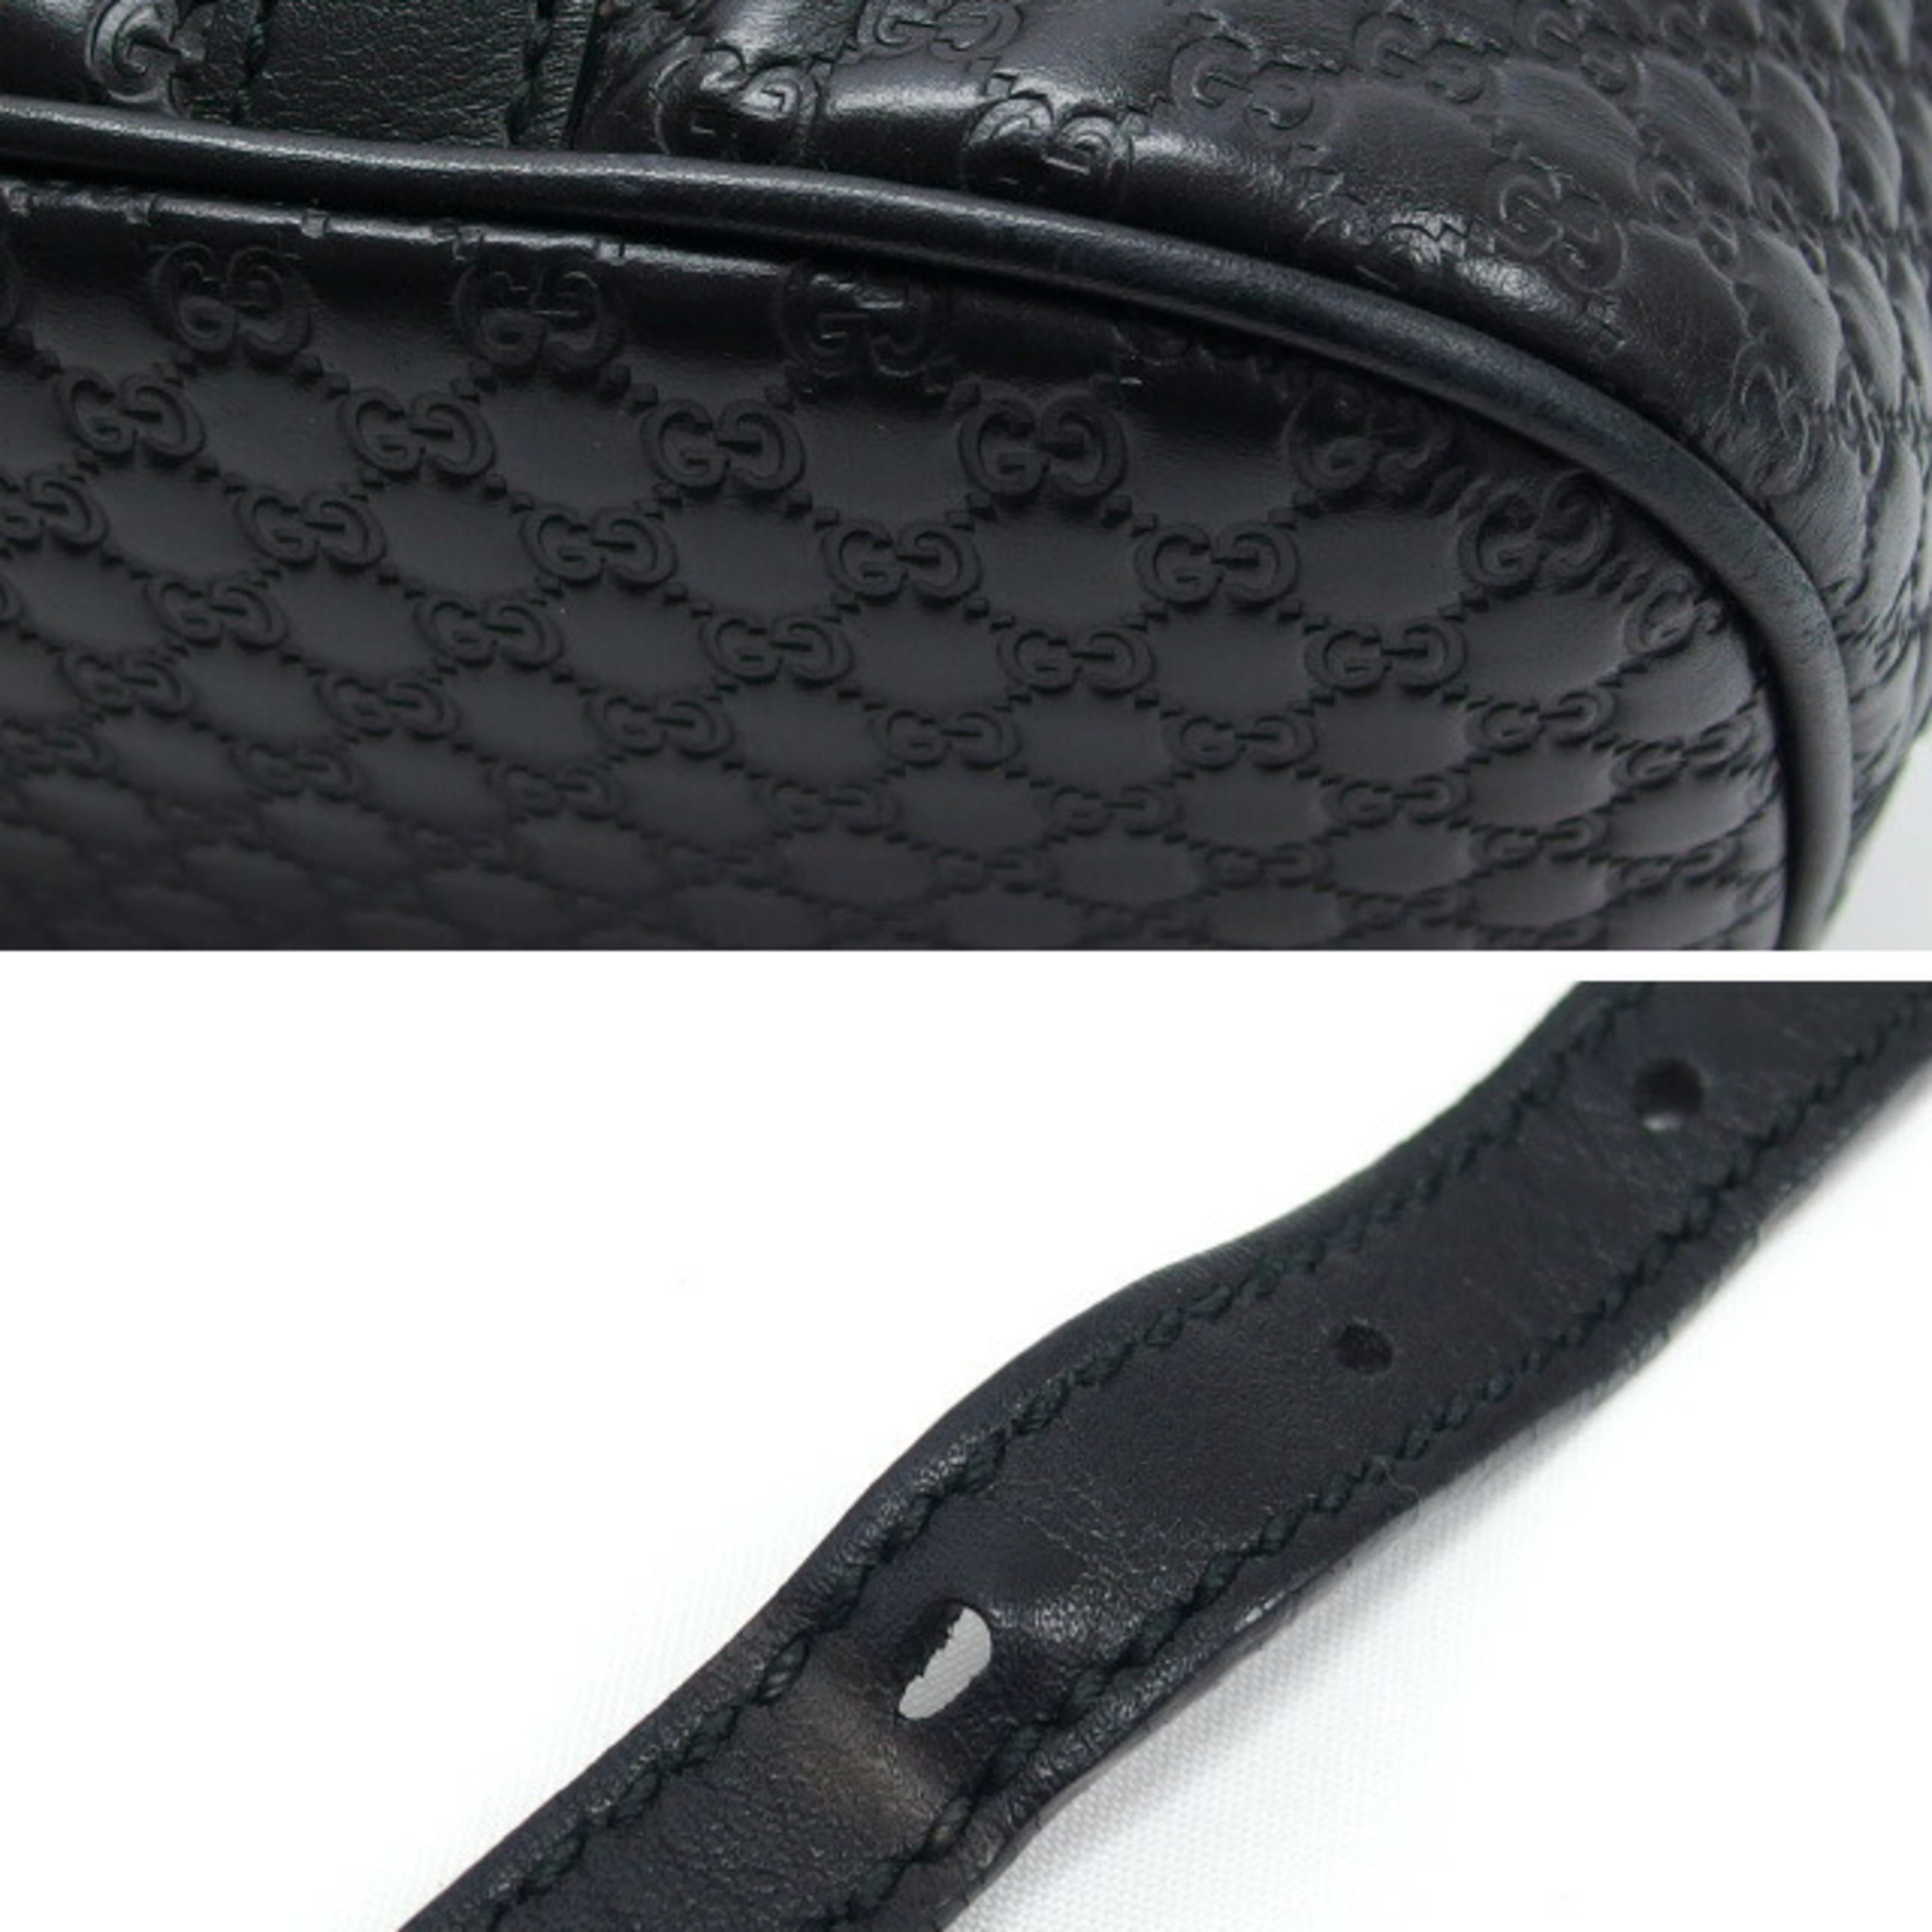 Gucci Micro Guccissima Handbag Shoulder Bag Black